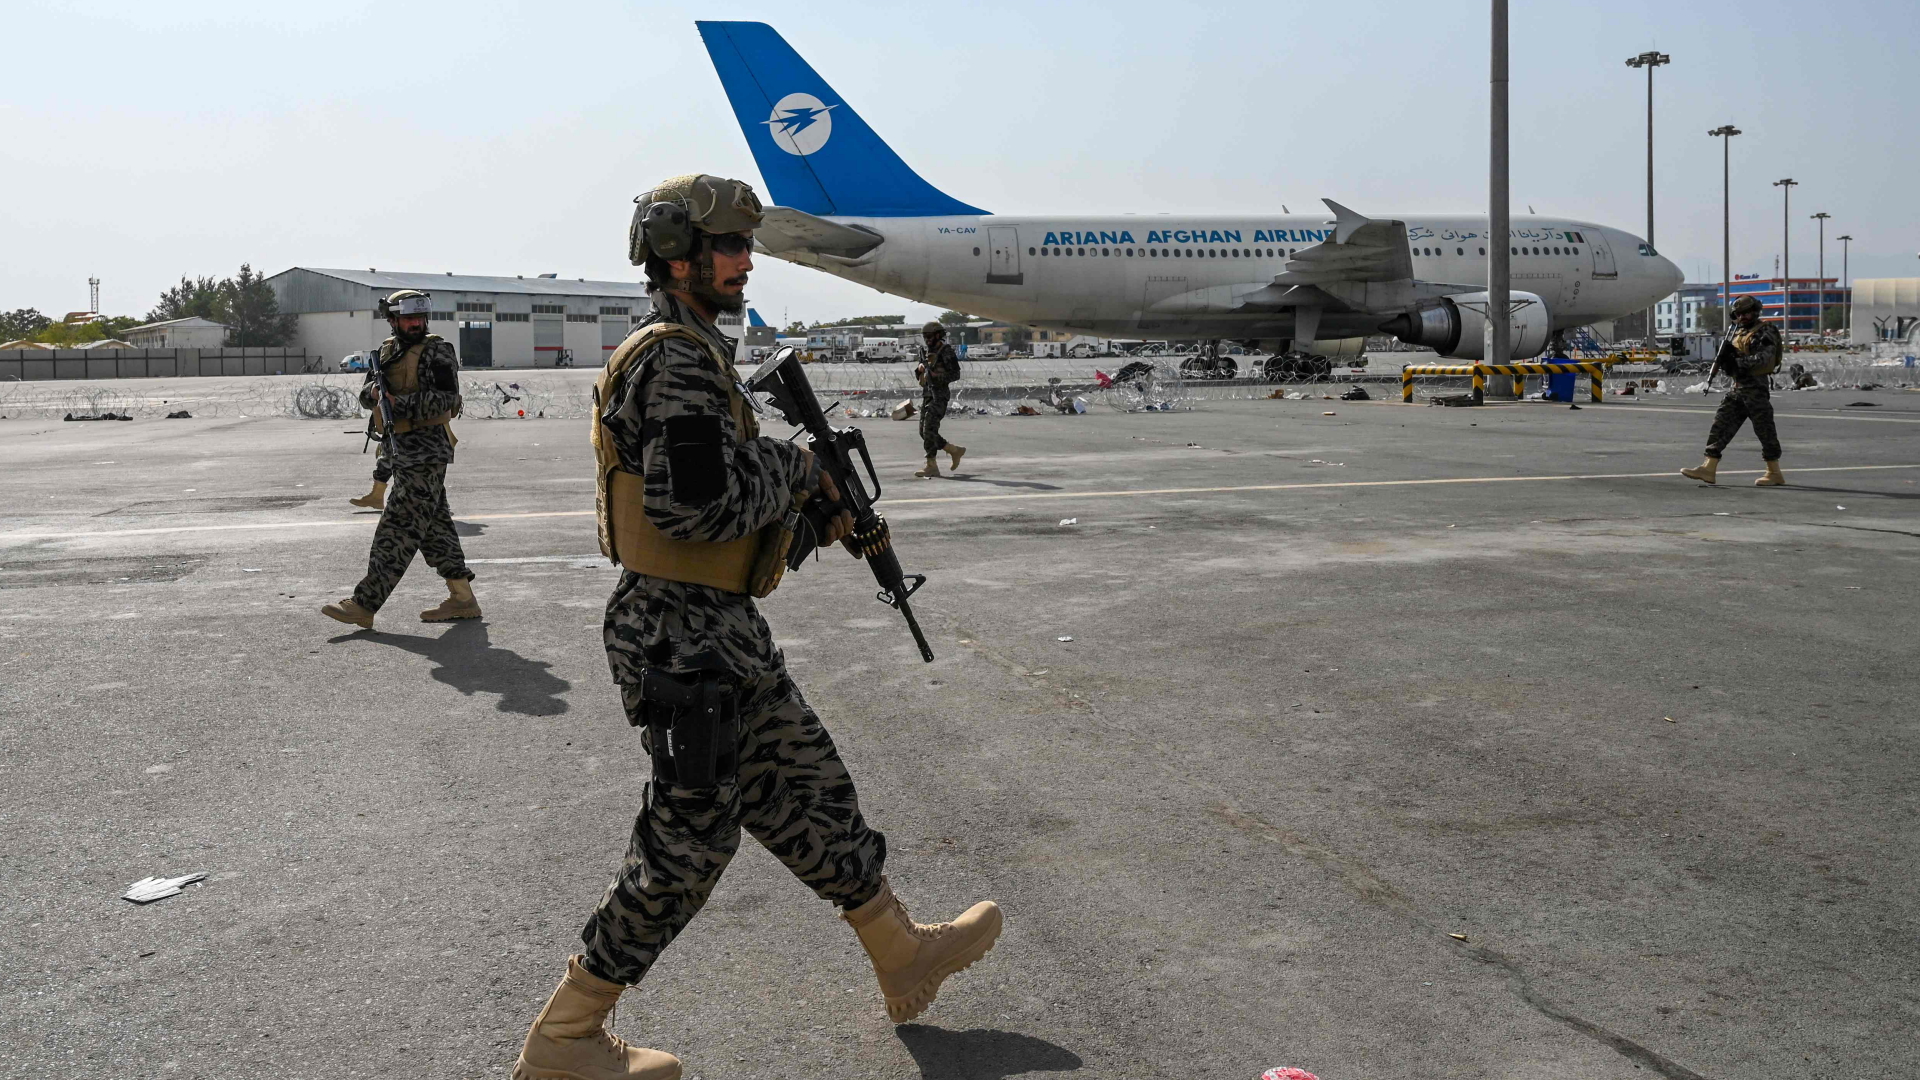 Angehörige der Badri-Spezialeinheit der Taliban patrouilleren auf dem Rollfeld des Kabuler Flughafens. | AFP